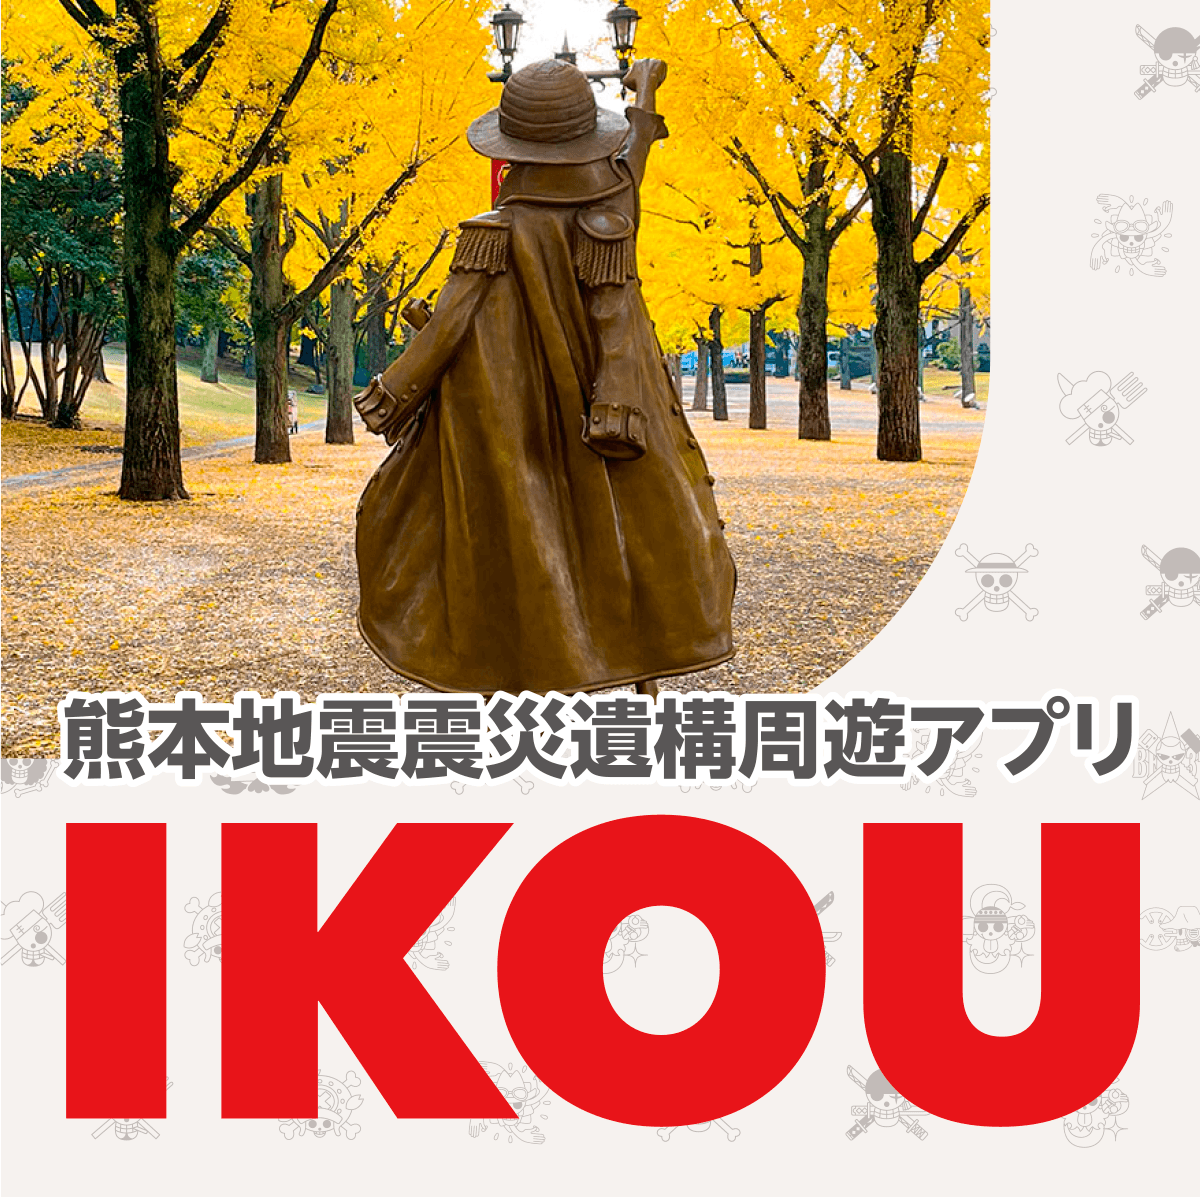 周遊アプリ IKOU 復旧のお知らせ